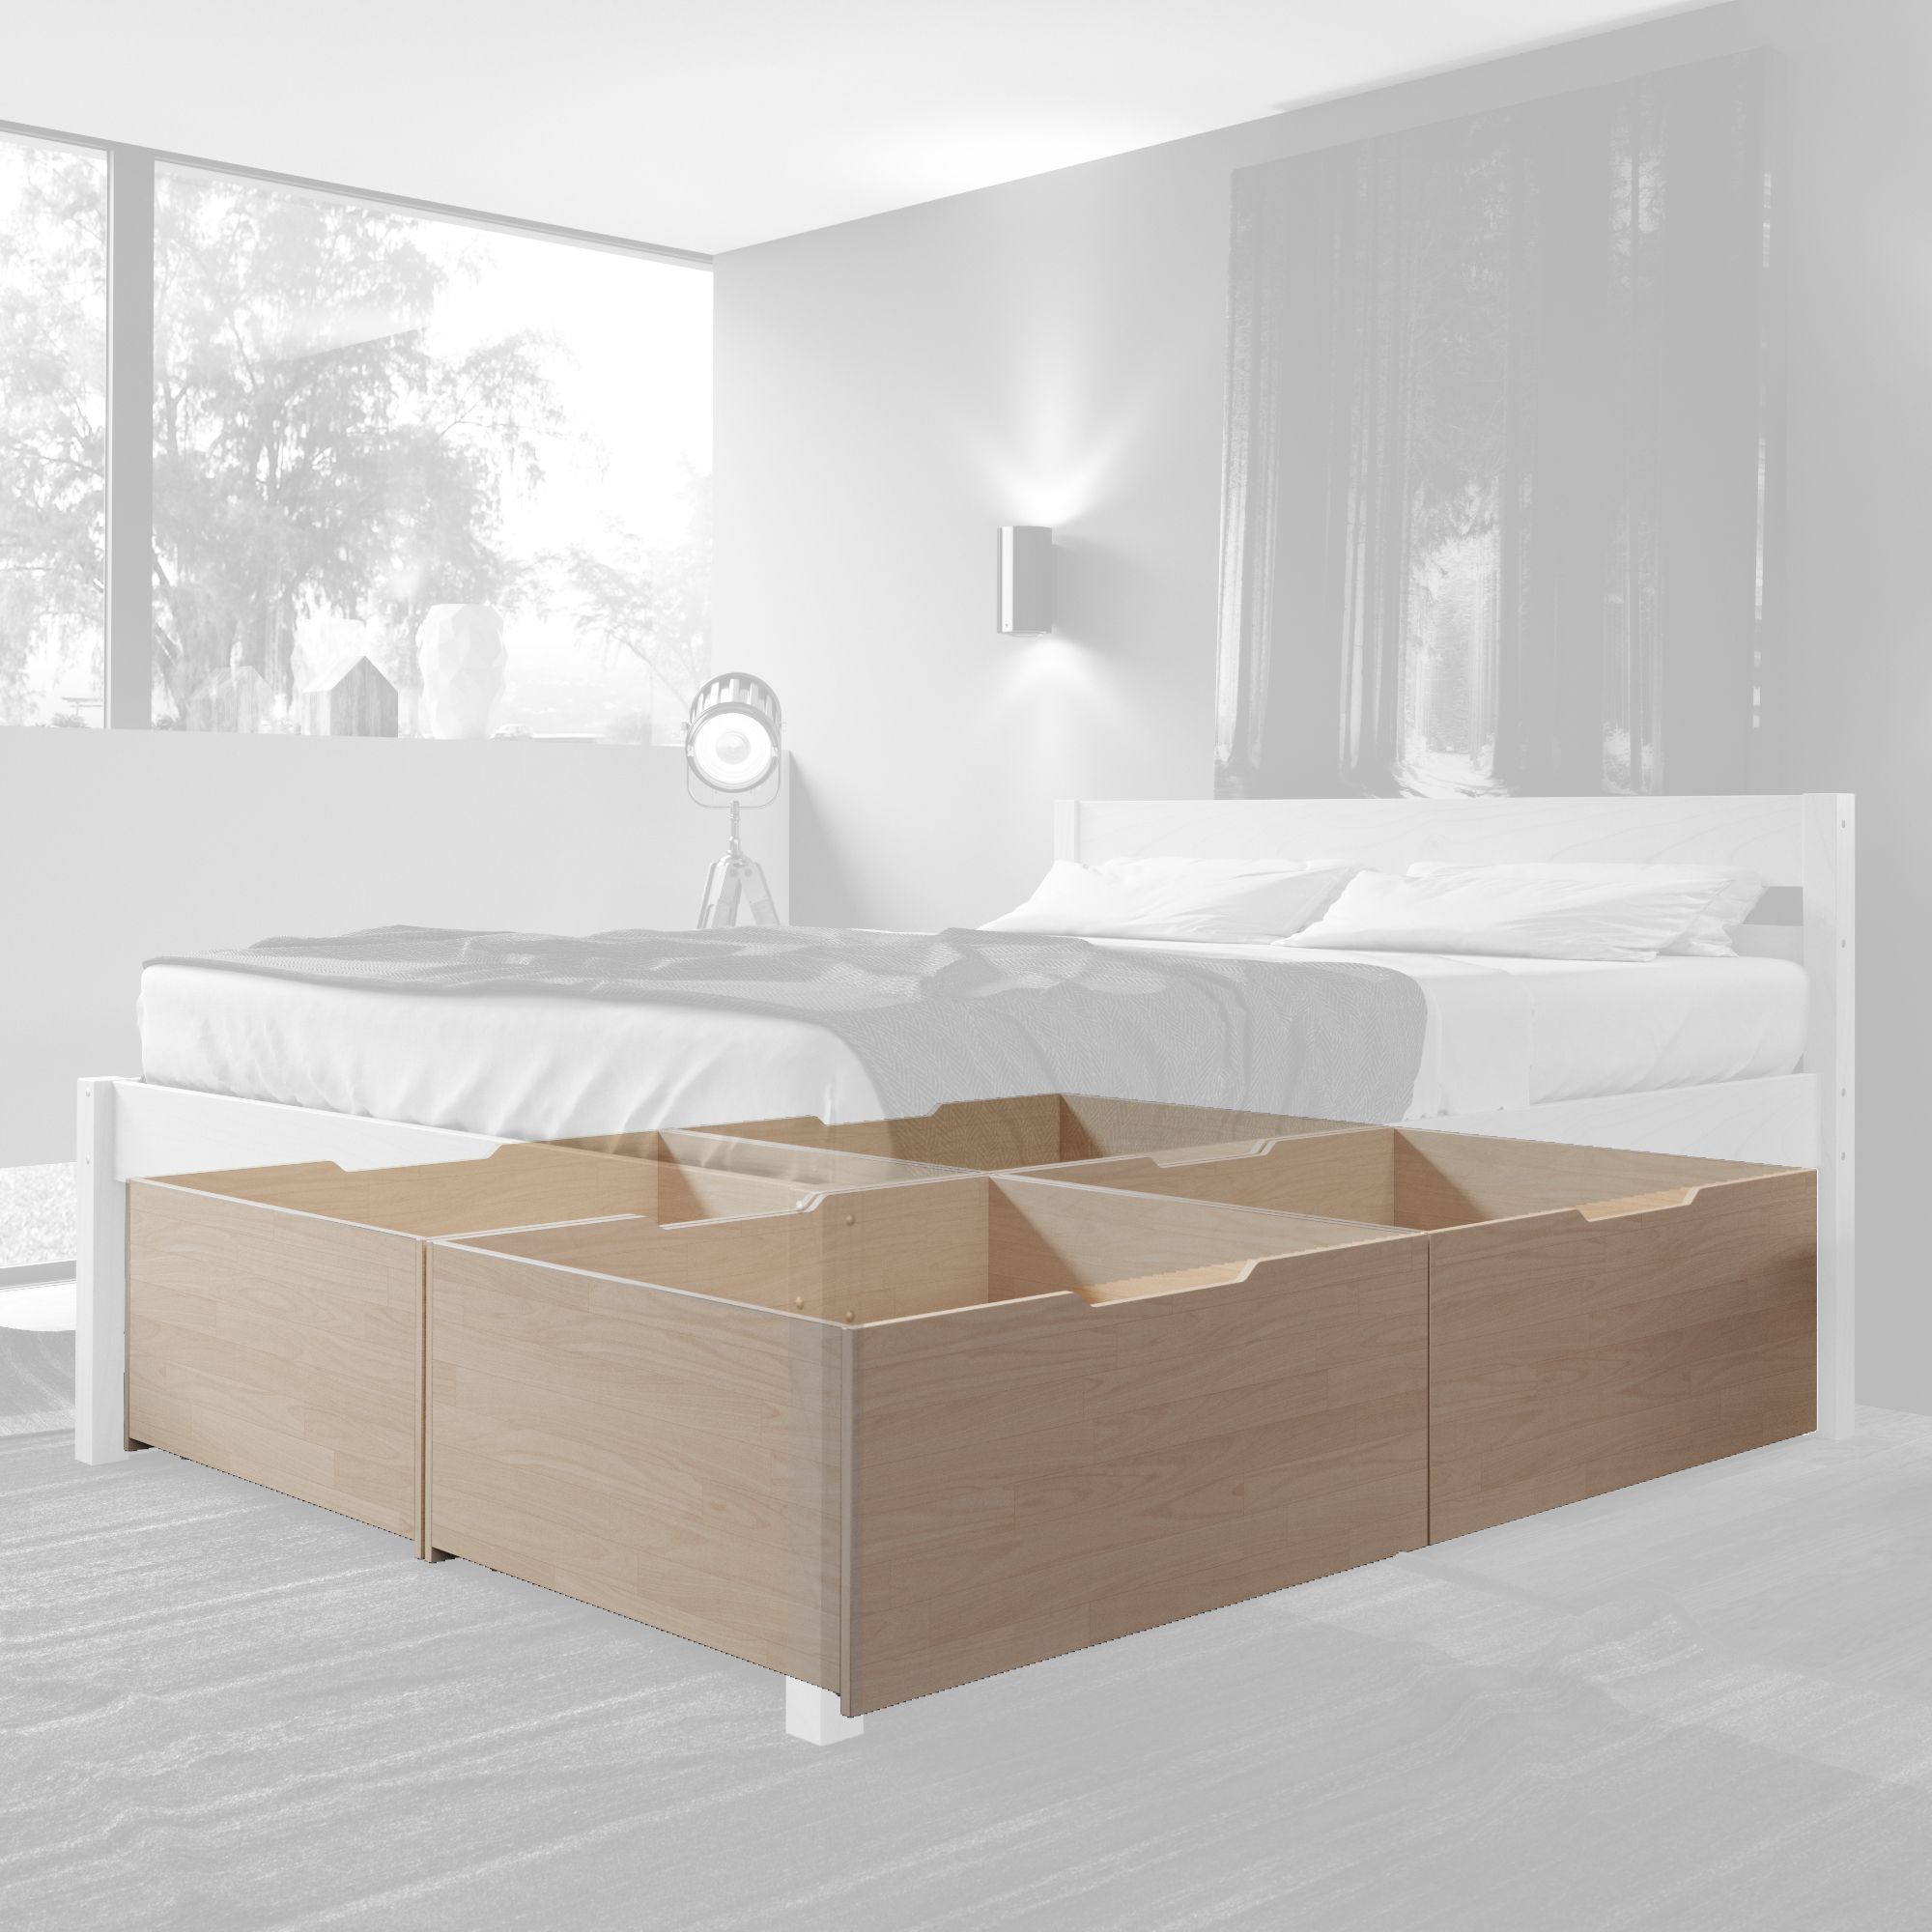 Hansales. Высокая кровать. Высокая двуспальная кровать из массива березы HANSALES 140x200 см. Кровать деревянная HANSALES из массива березы. Серый высокий кровать.